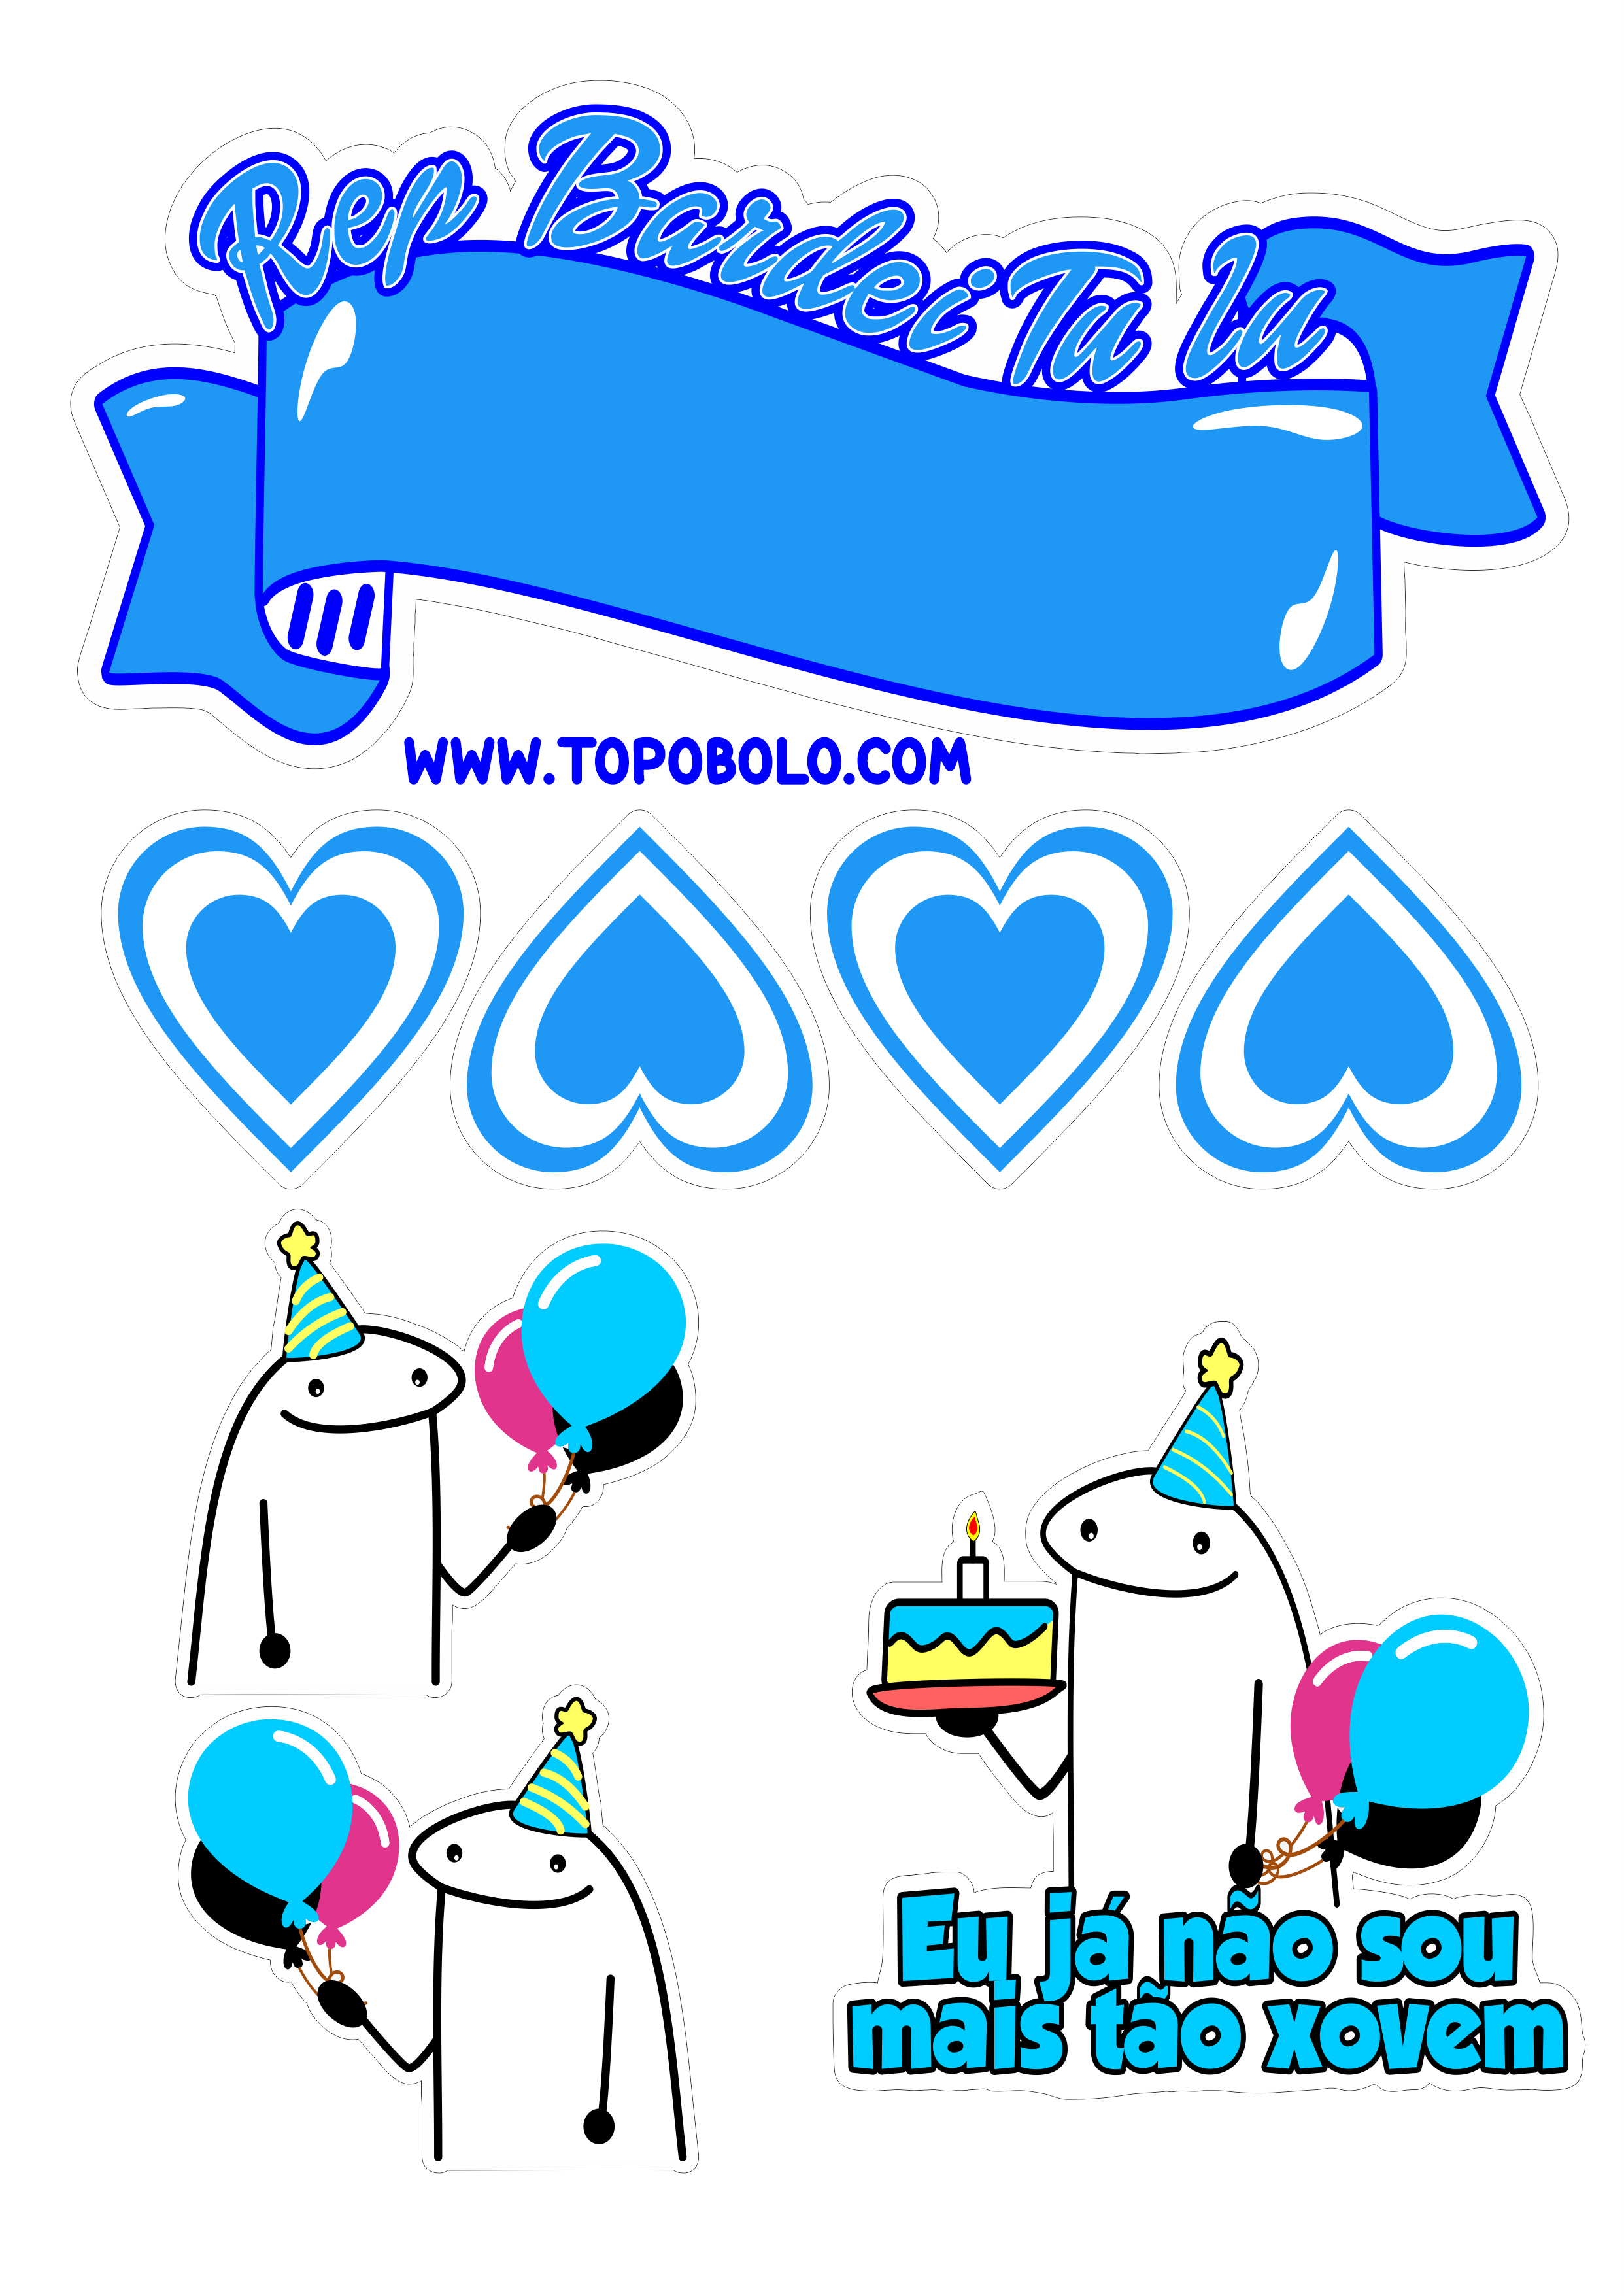 Happy Birthday topo de bolo flork of cows figurinhas engraçadas azul já não sou mais tão jovem png image corações